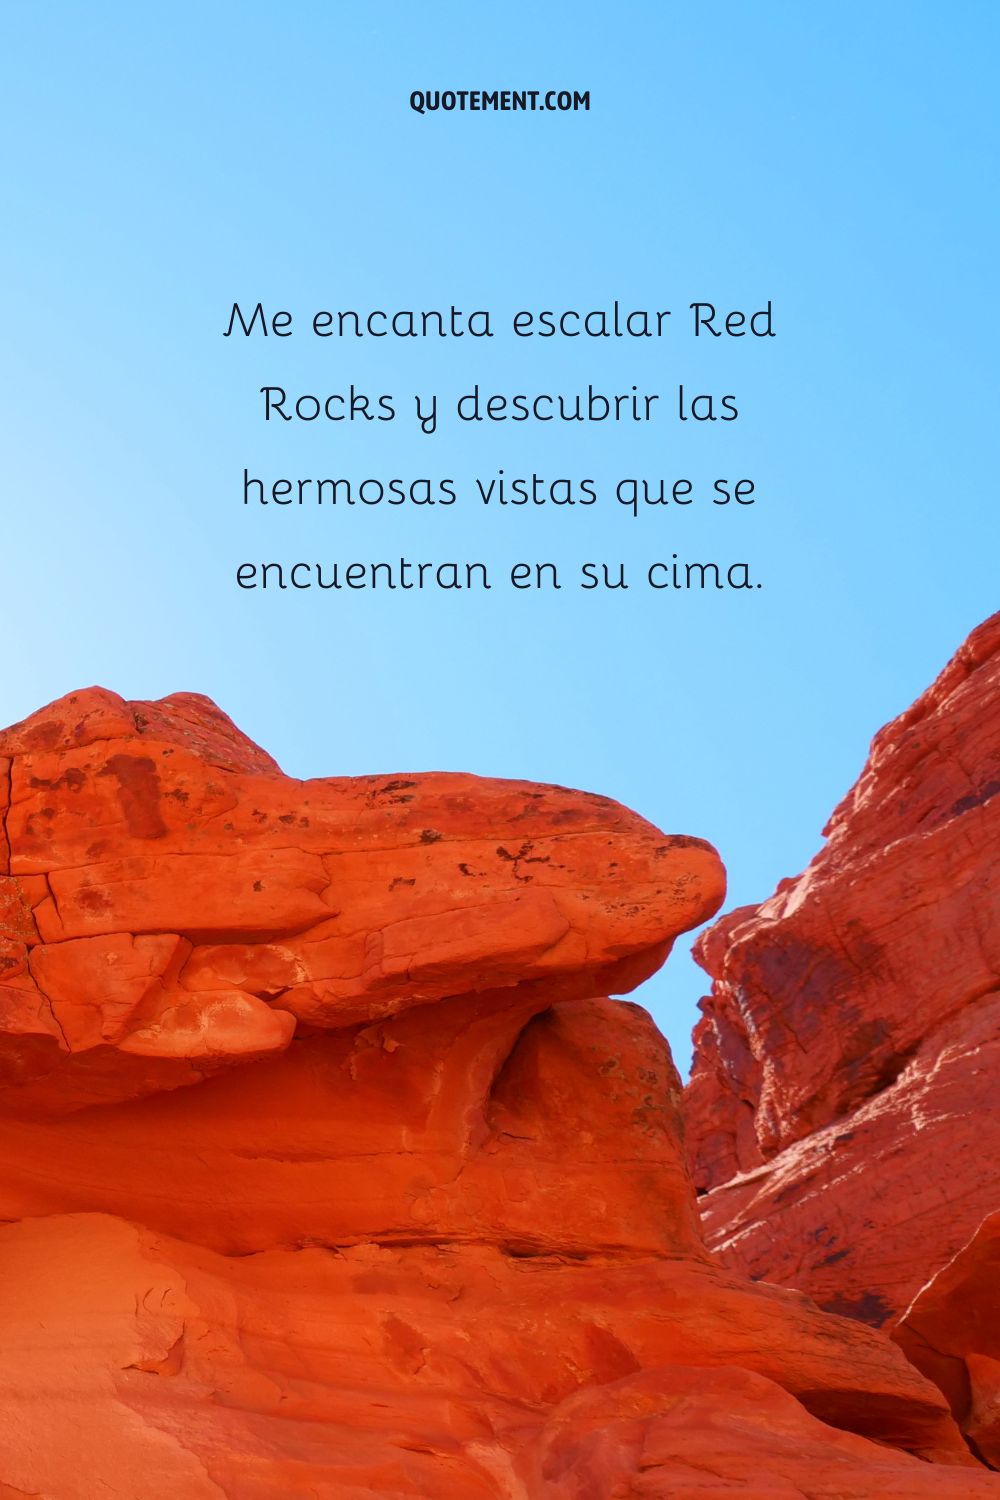 Me encanta escalar las Rocas Rojas y descubrir las hermosas vistas que se encuentran en su cima.